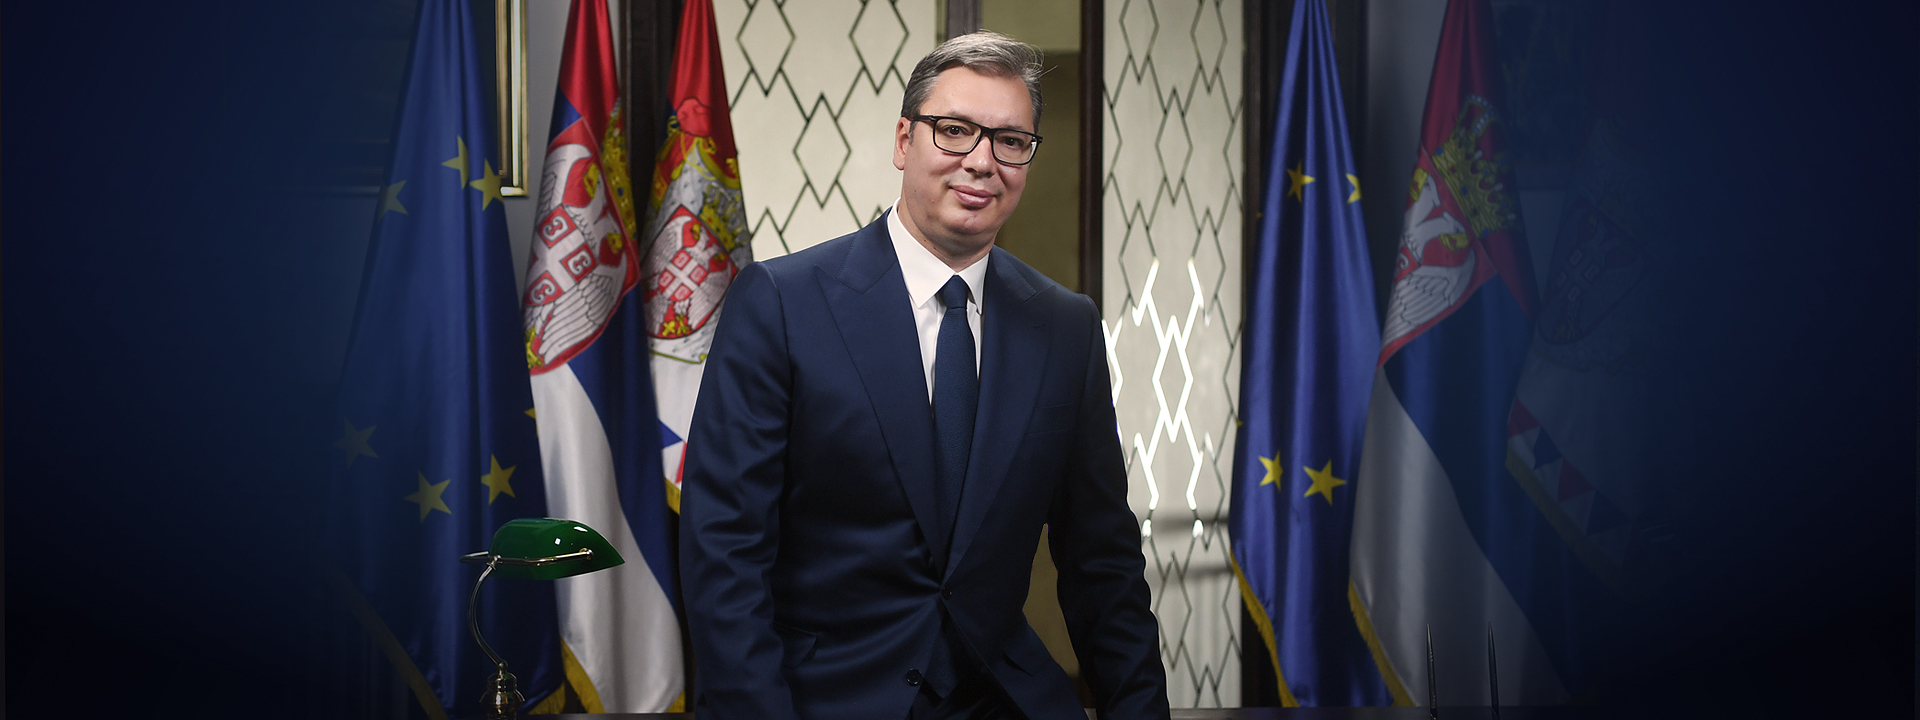 Predsednik Srbije predložio dijalog o litijumu: "Srbija može da proizvede 58 HILJADA tona litijum karbonata"